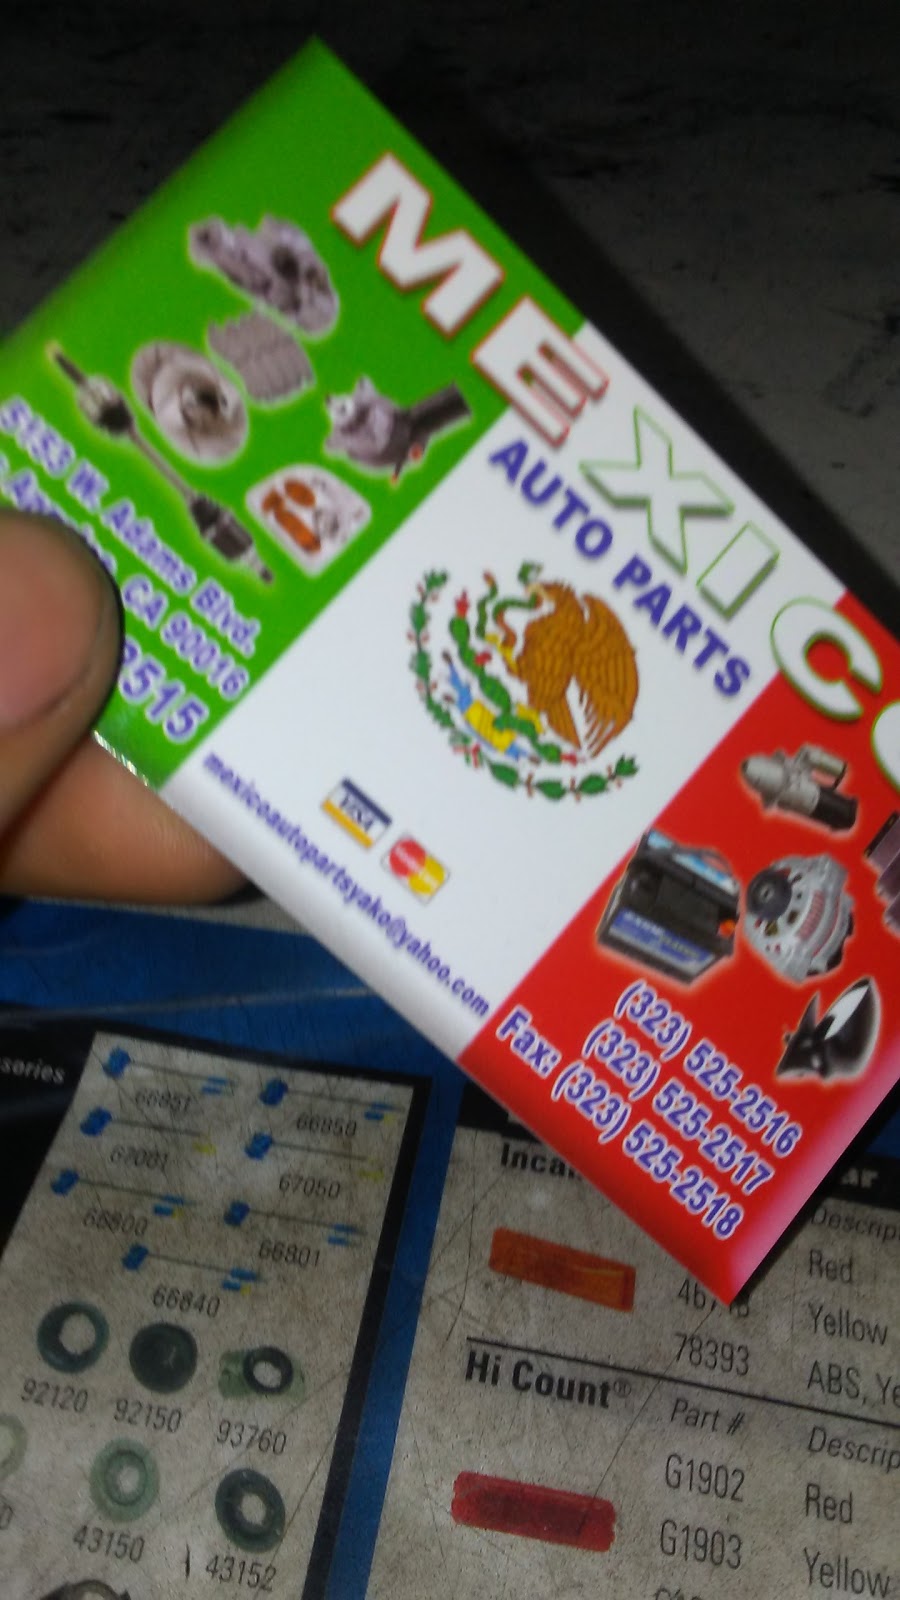 Mexico Auto Parts | 5153 W Adams Blvd, Los Angeles, CA 90016, USA | Phone: (323) 525-2515